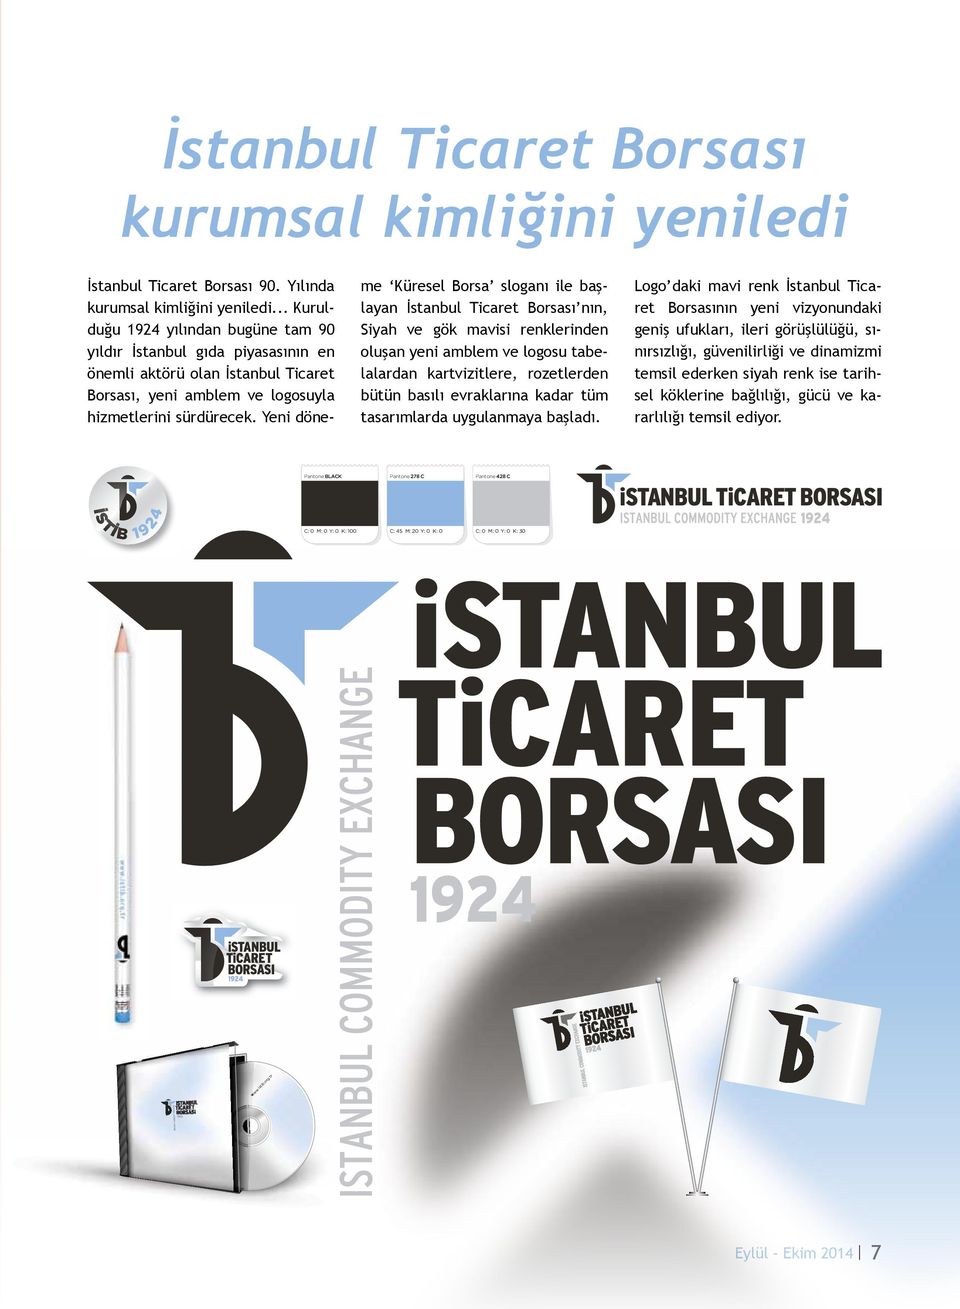 Yeni döneme Küresel Borsa sloganı ile başlayan İstanbul Ticaret Borsası nın, Siyah ve gök mavisi renklerinden oluşan yeni amblem ve logosu tabelalardan kartvizitlere, rozetlerden bütün basılı